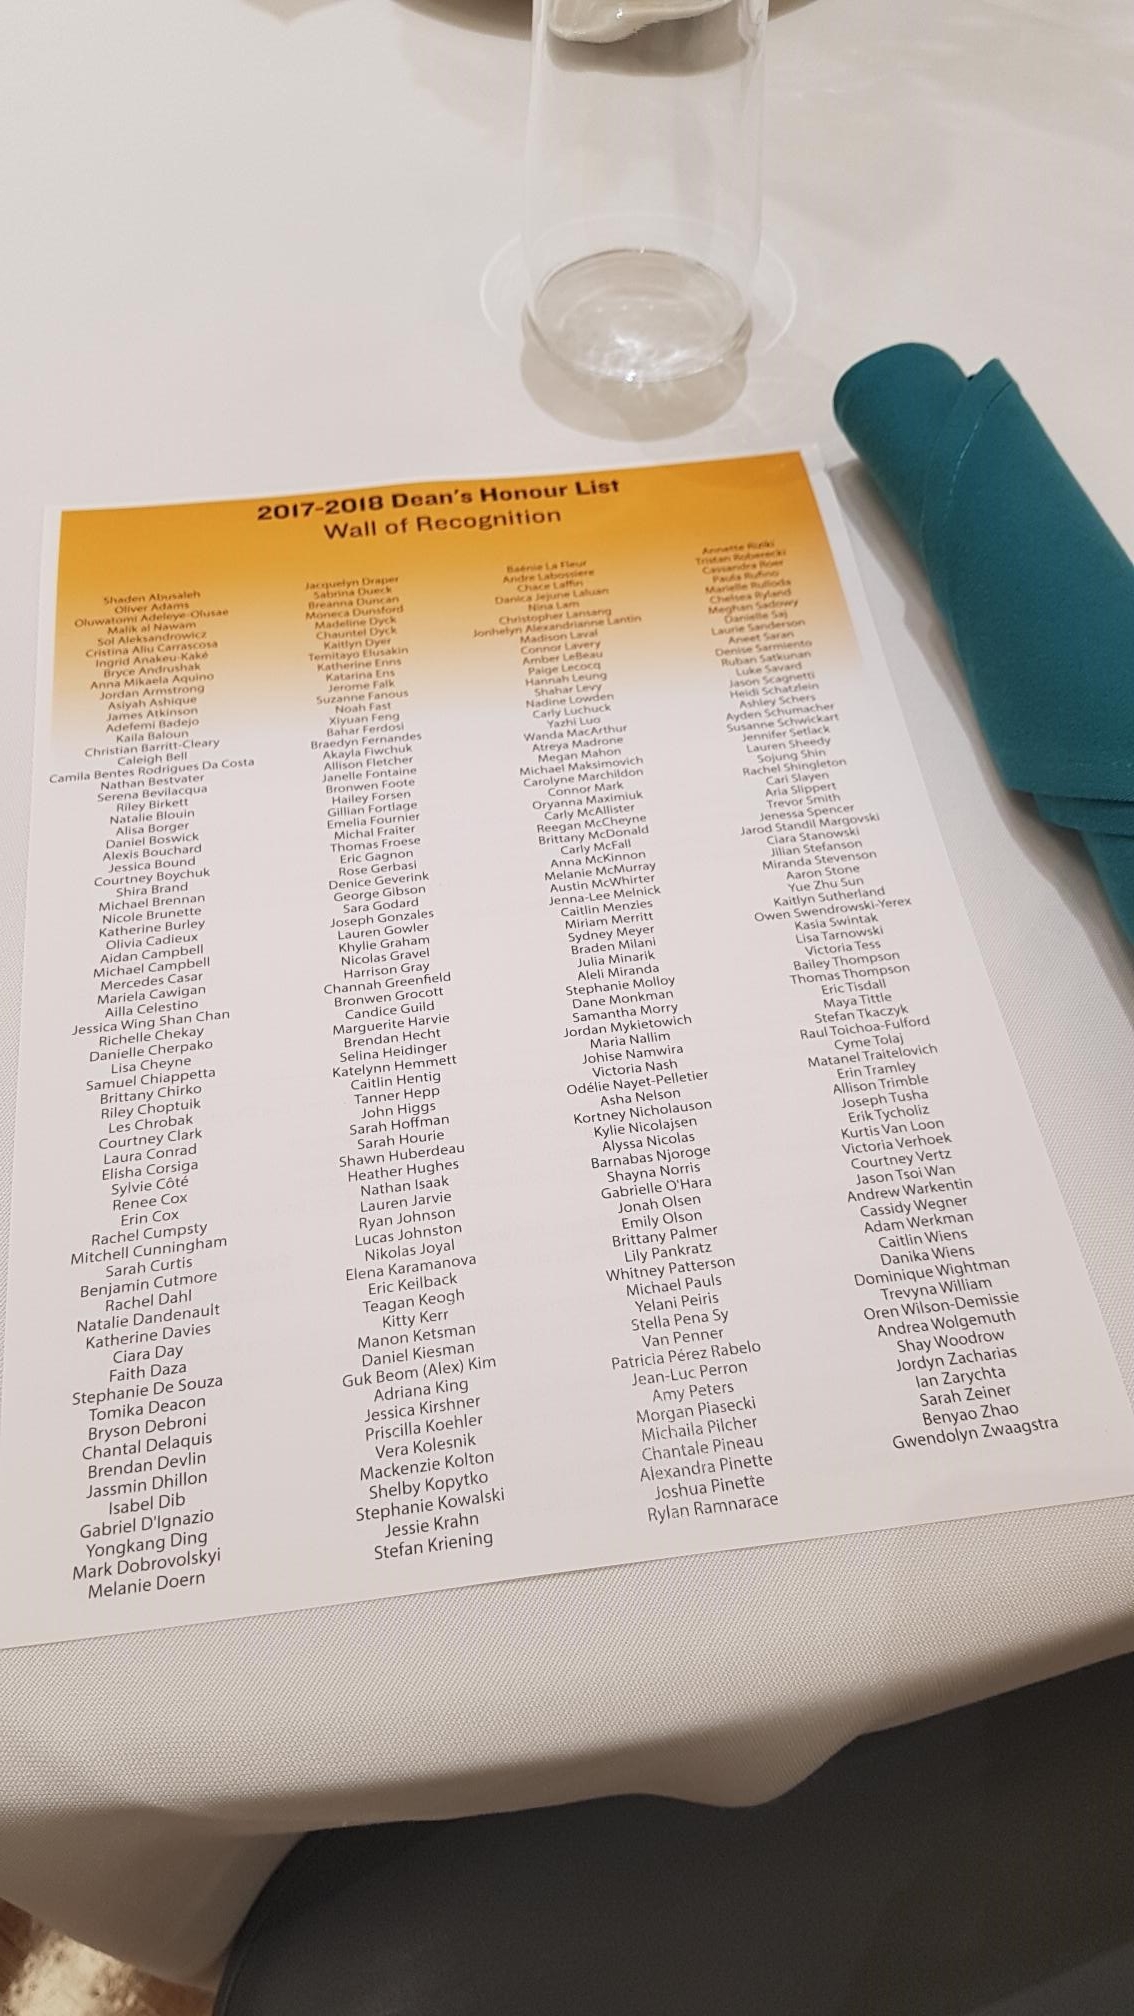 List of the Dean's Honour List Award recipients